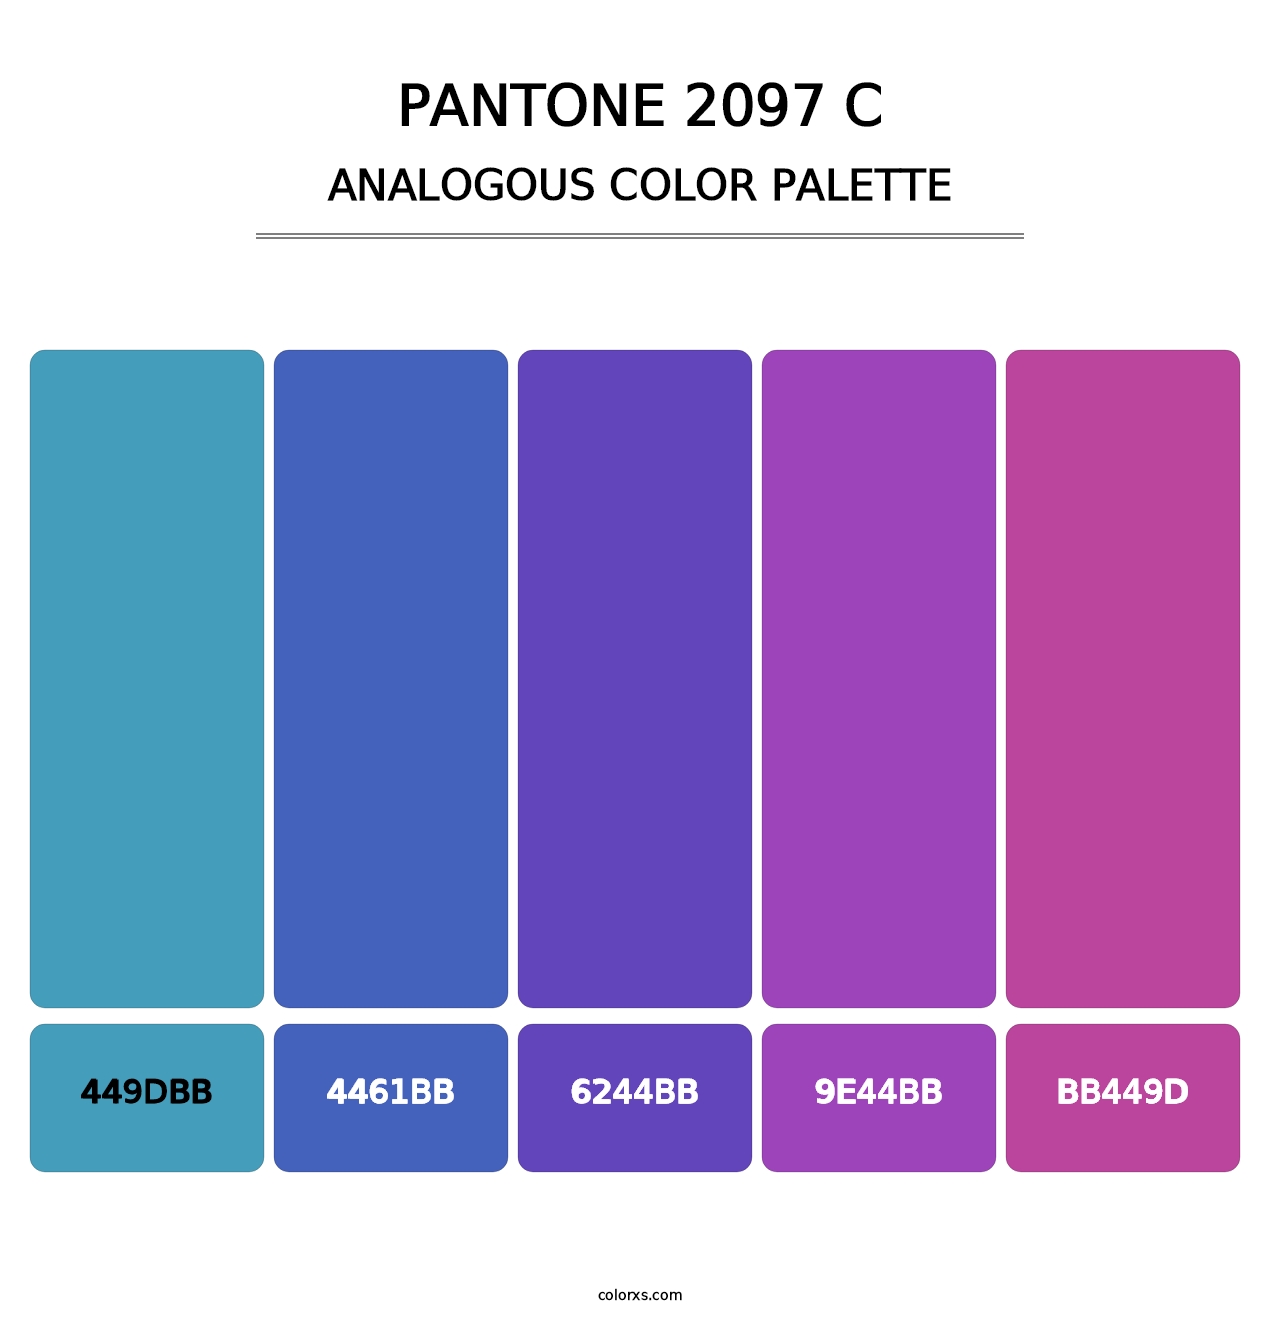 PANTONE 2097 C - Analogous Color Palette